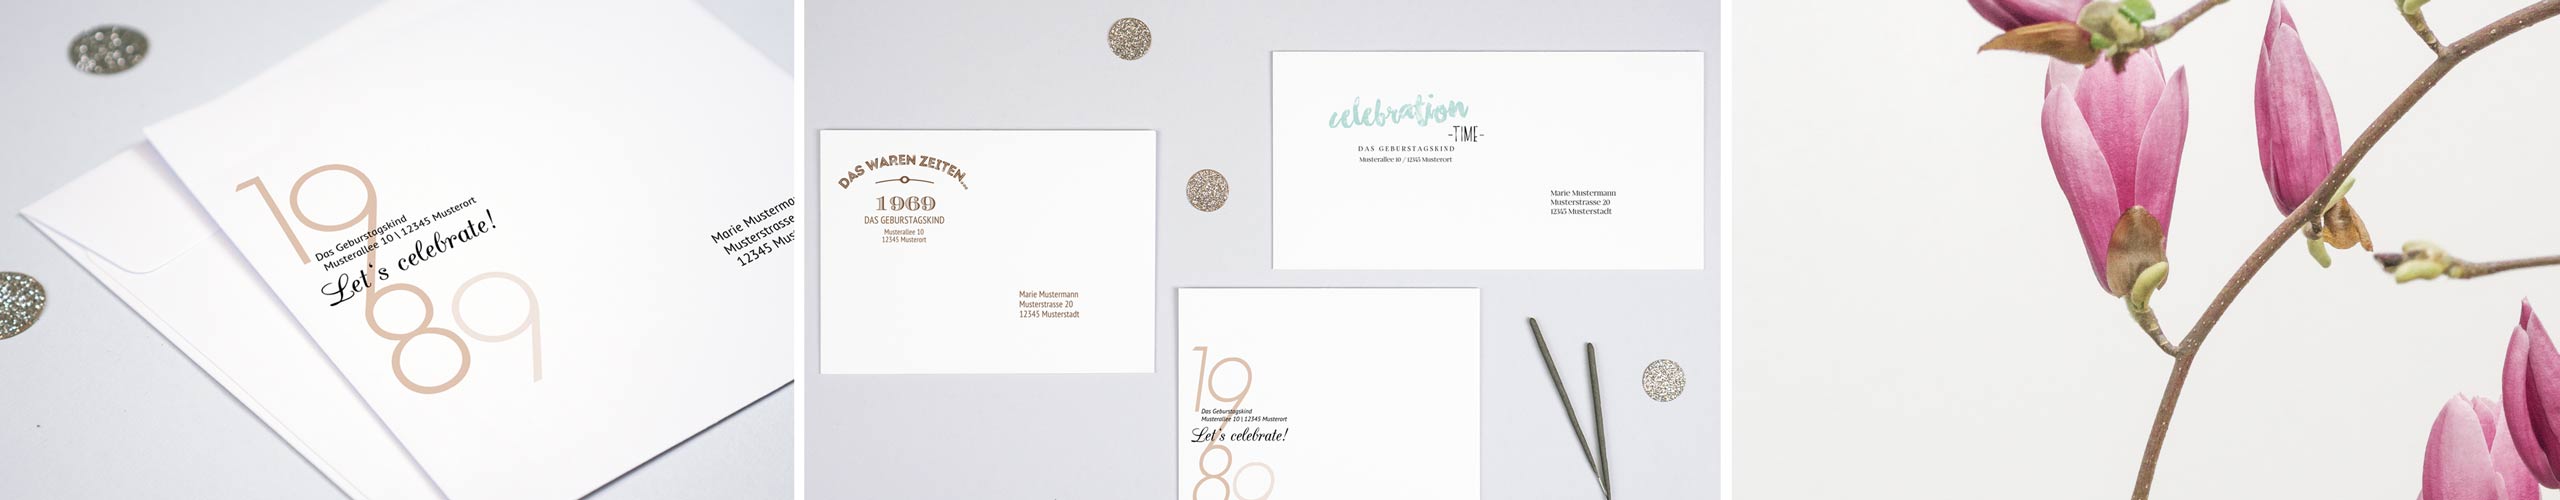 Umschläge für Geburtstagskarten mit Design und persönlichem Text